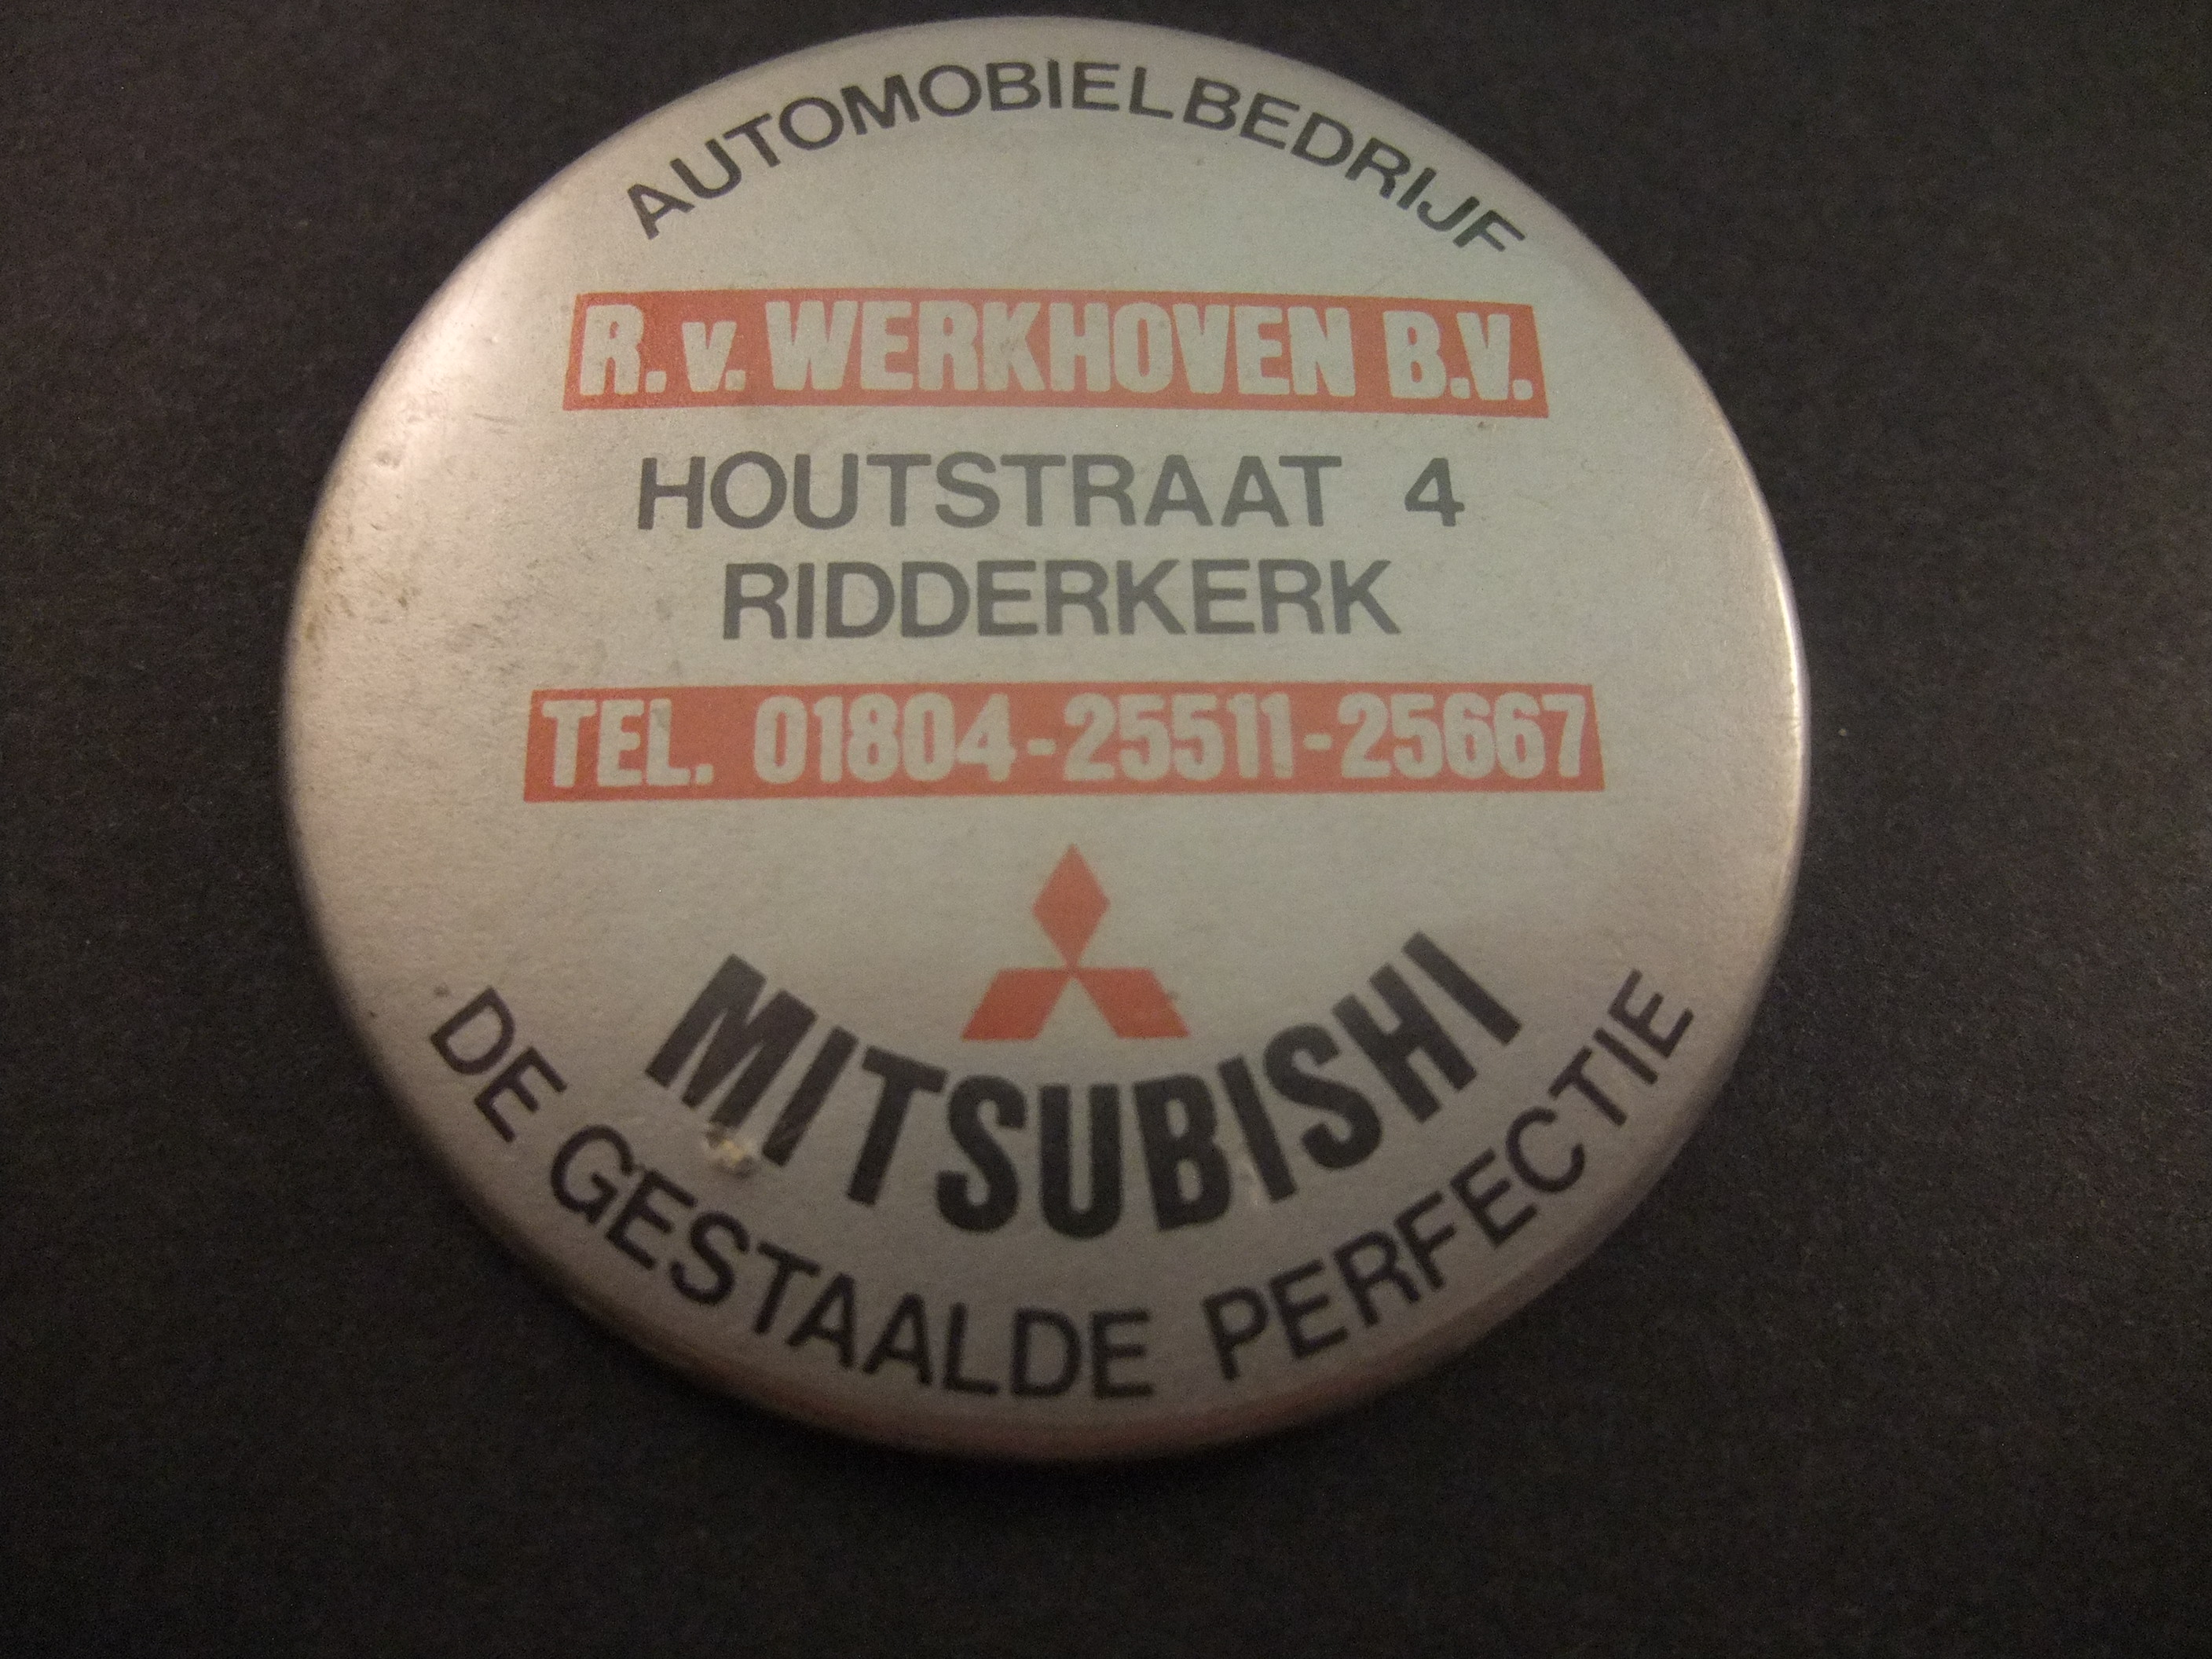 Automobielbedrijf Werkhoven, Houtstraat  Ridderkerk Mitsubishi dealer